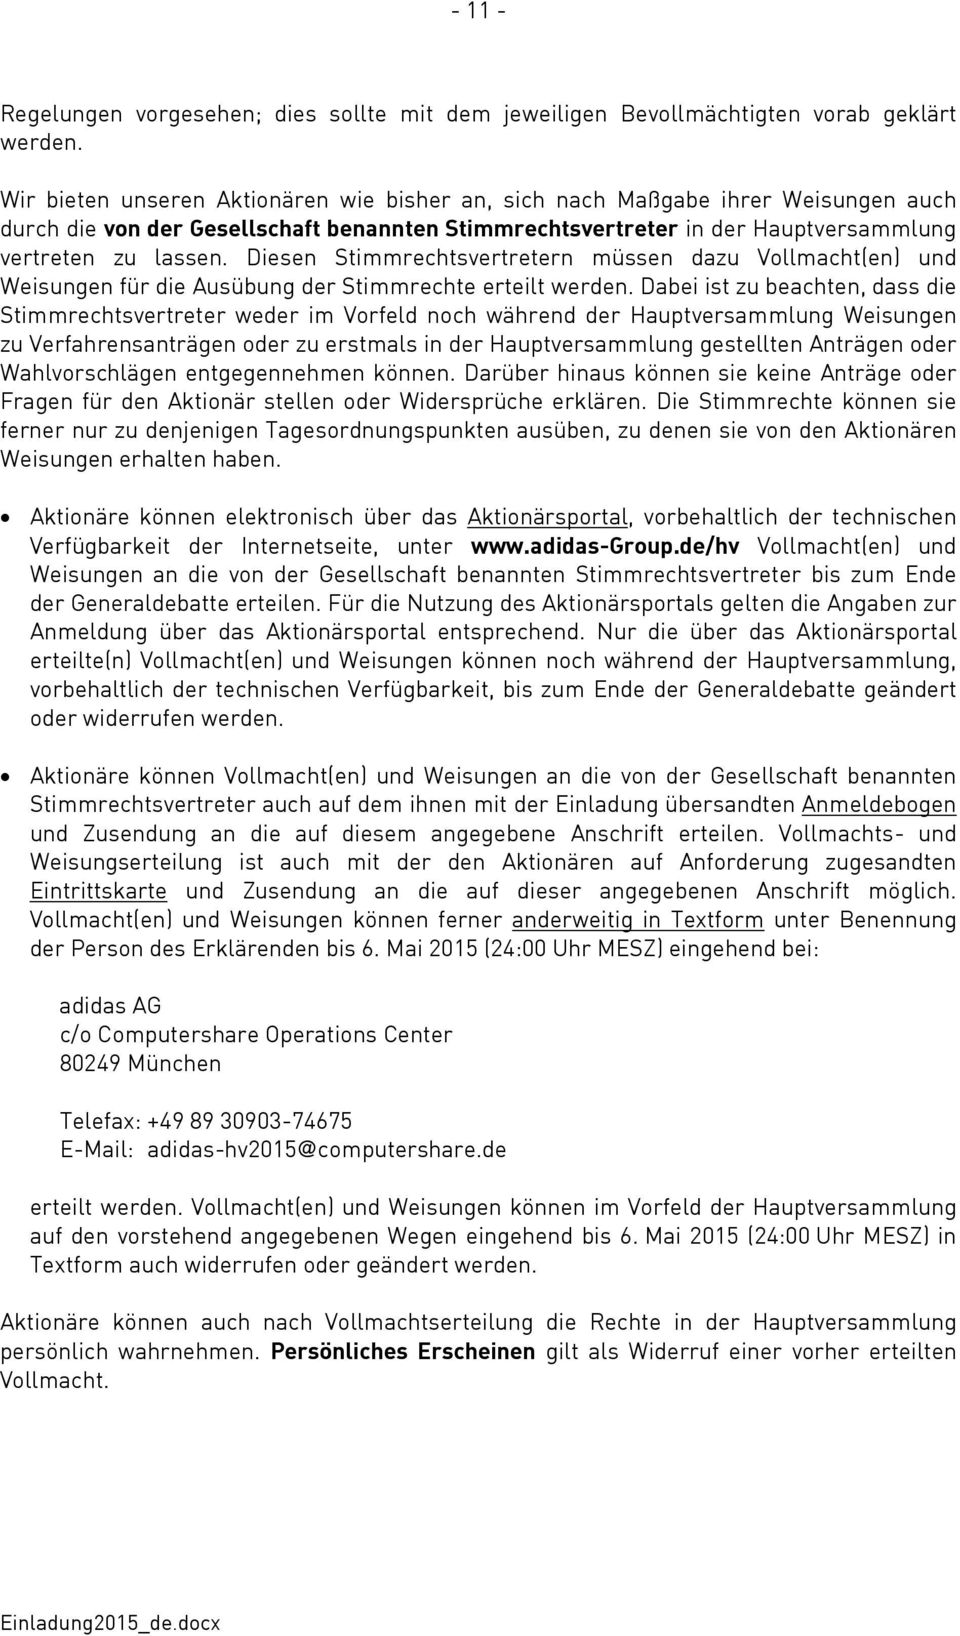 adidas AG Herzogenaurach ISIN: DE000A1EWWW0 am Donnerstag, den 7. Mai 2015,  10:30 Uhr ordentlichen Hauptversammlung TAGESORDNUNG - PDF Free Download